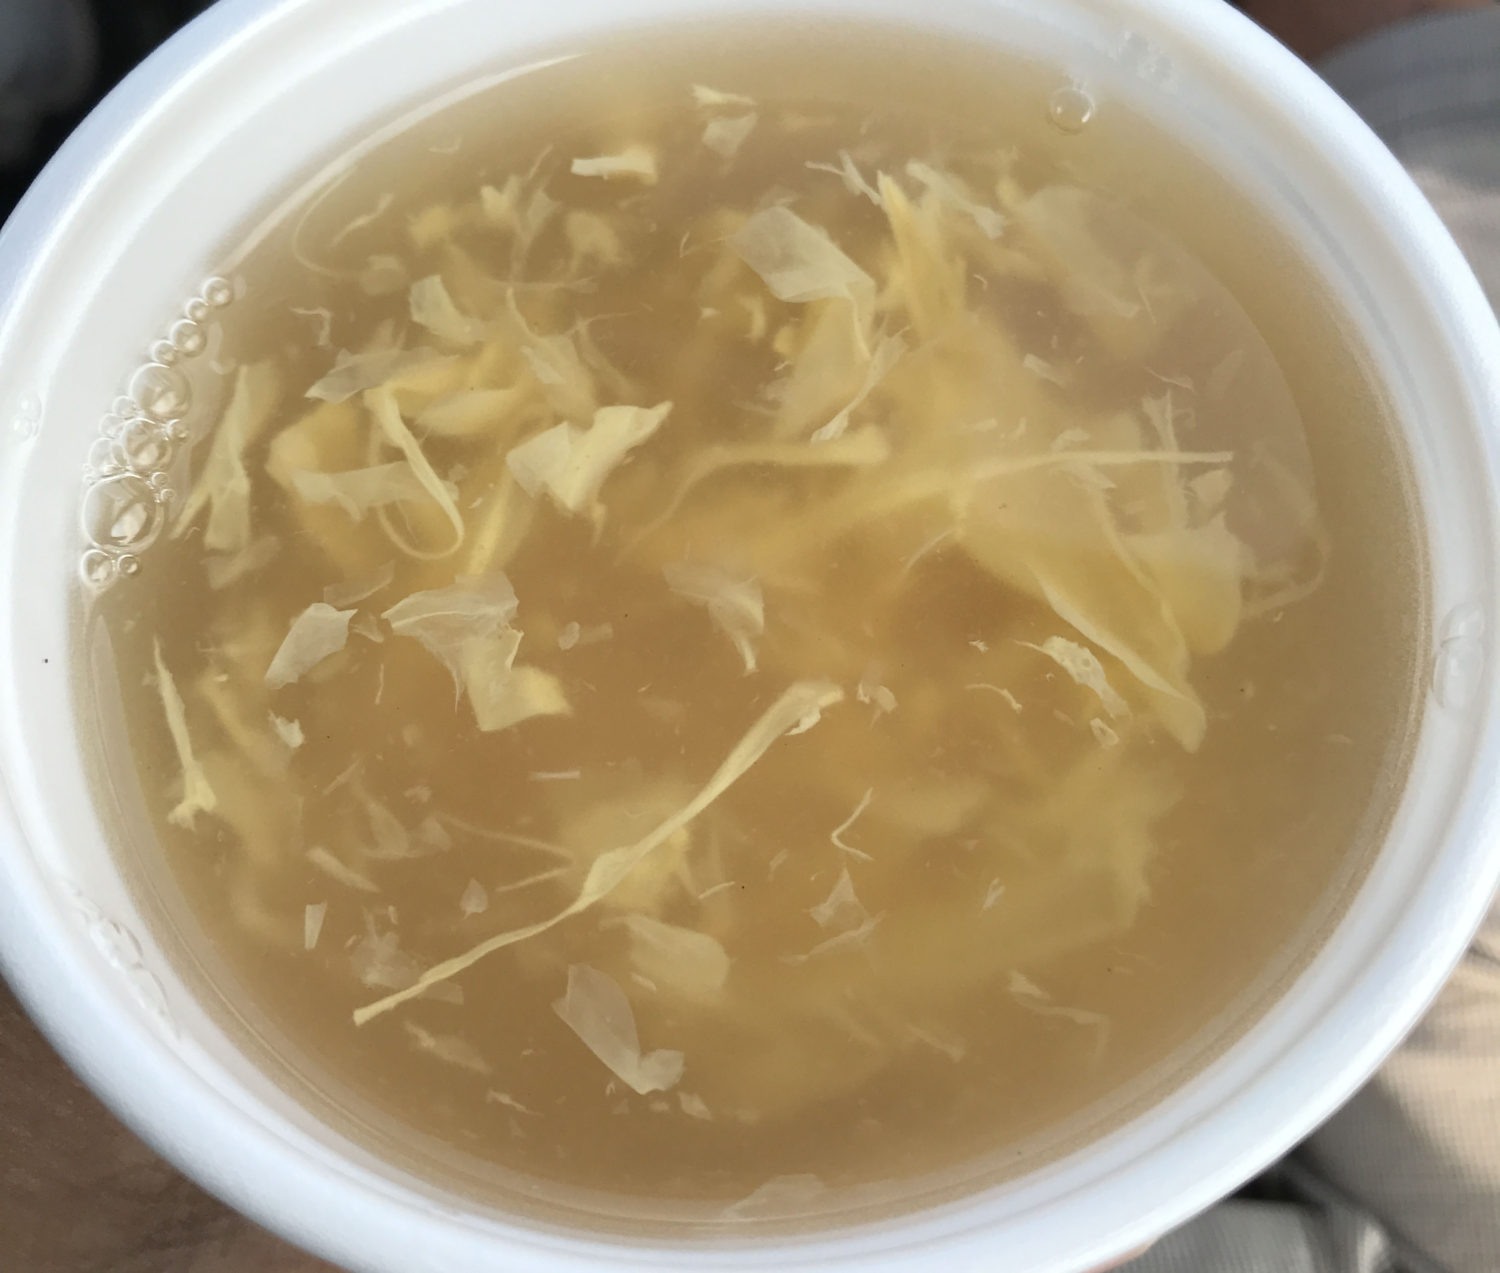 ランチサービスの玉子スープ。しっかりとした味付けで、飲みごたえがあります。